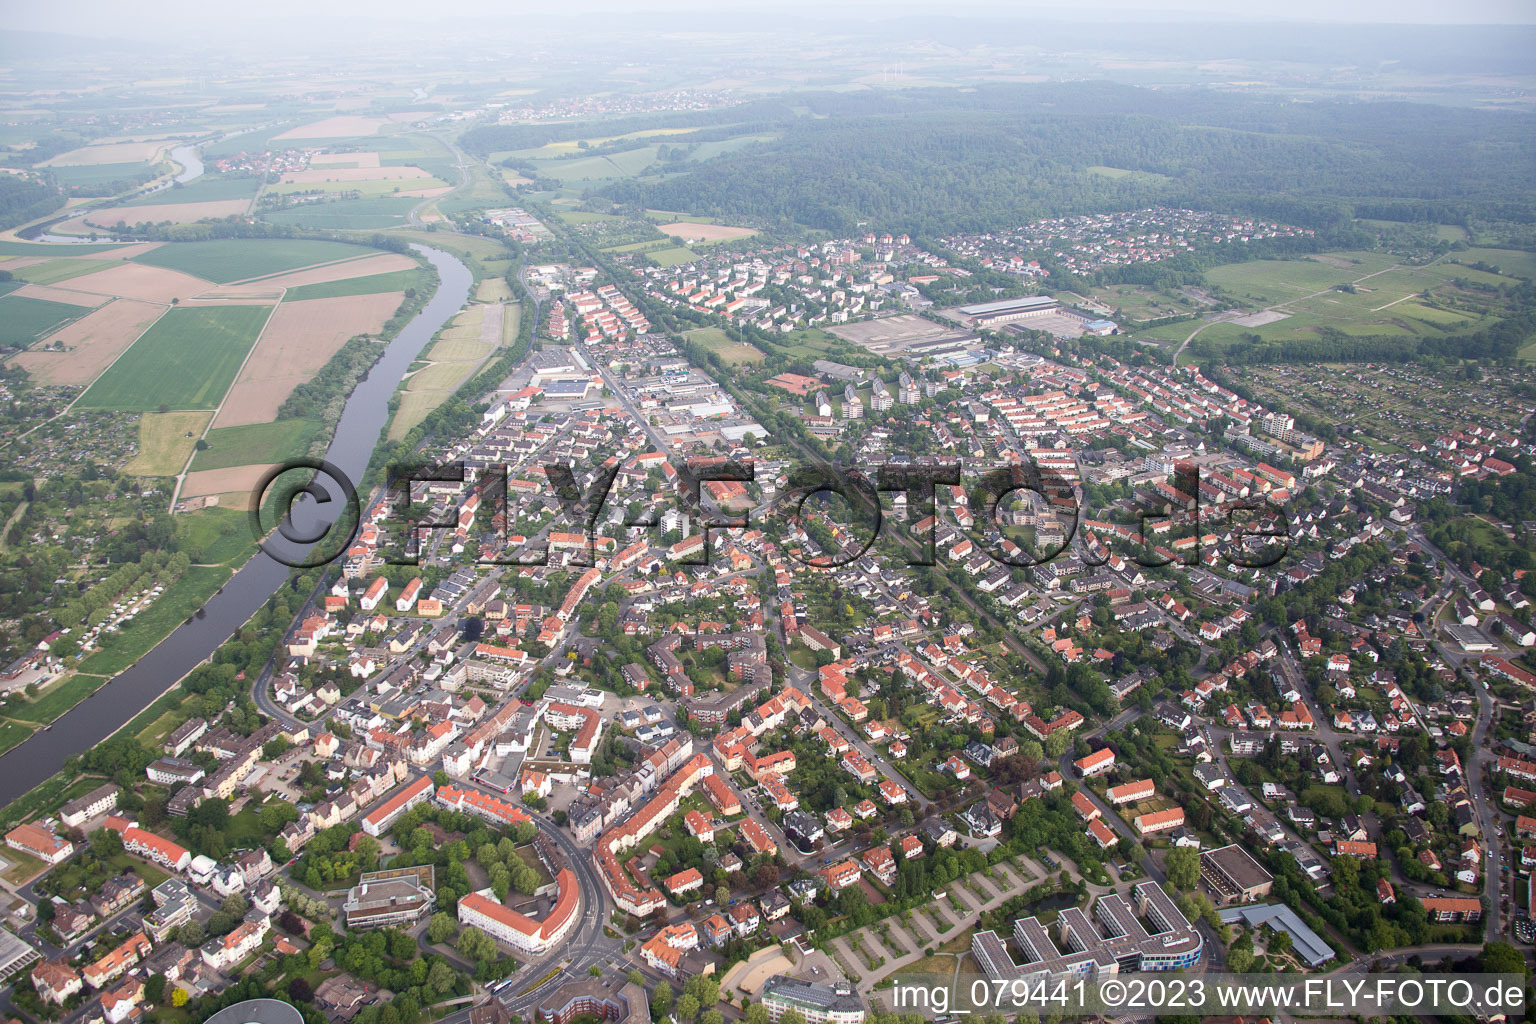 Hameln im Bundesland Niedersachsen, Deutschland aus der Drohnenperspektive